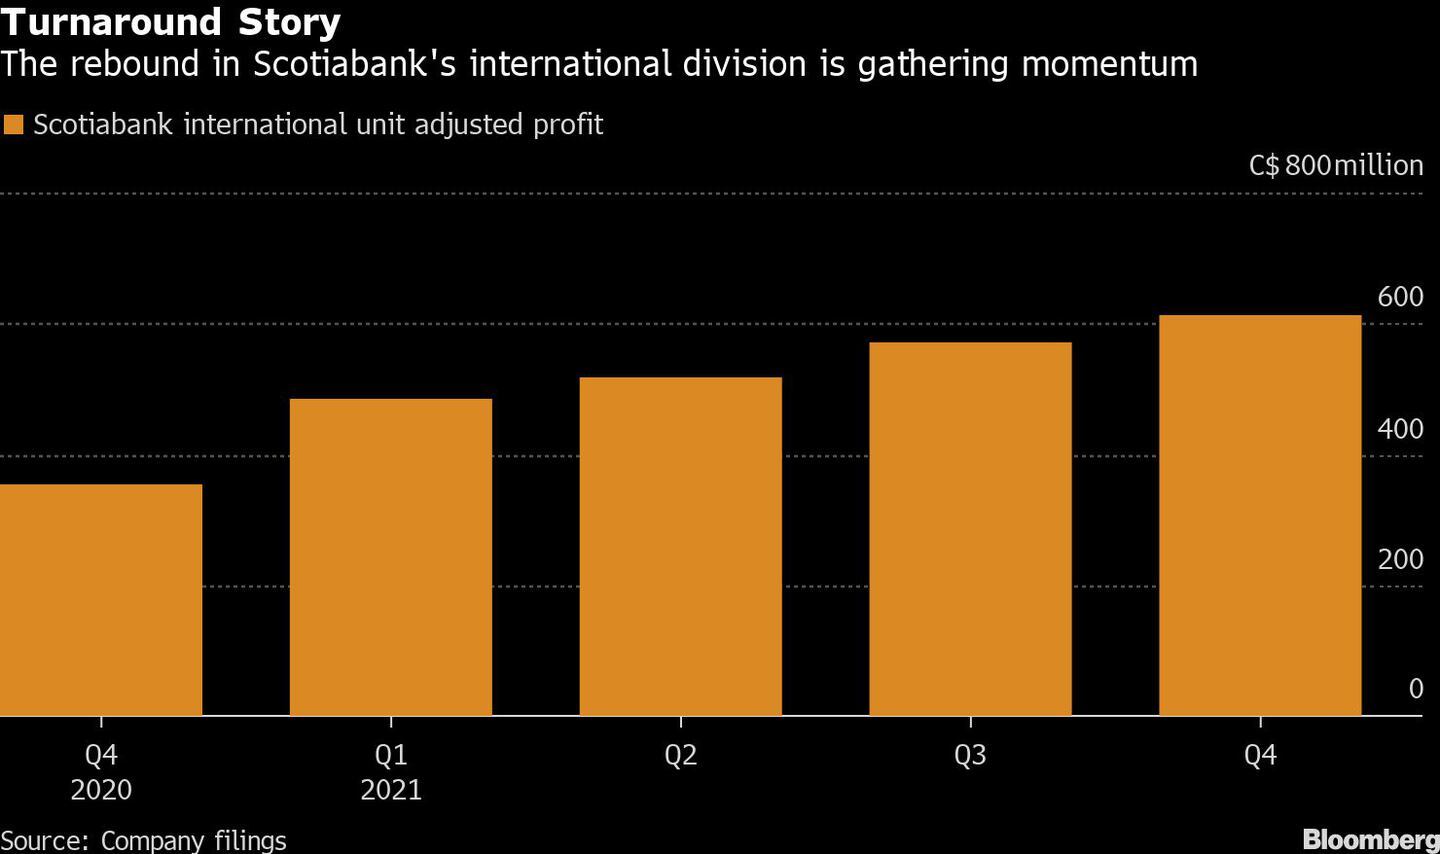 El repunte de la división internacional de Scotiabank cobra fuerzadfd